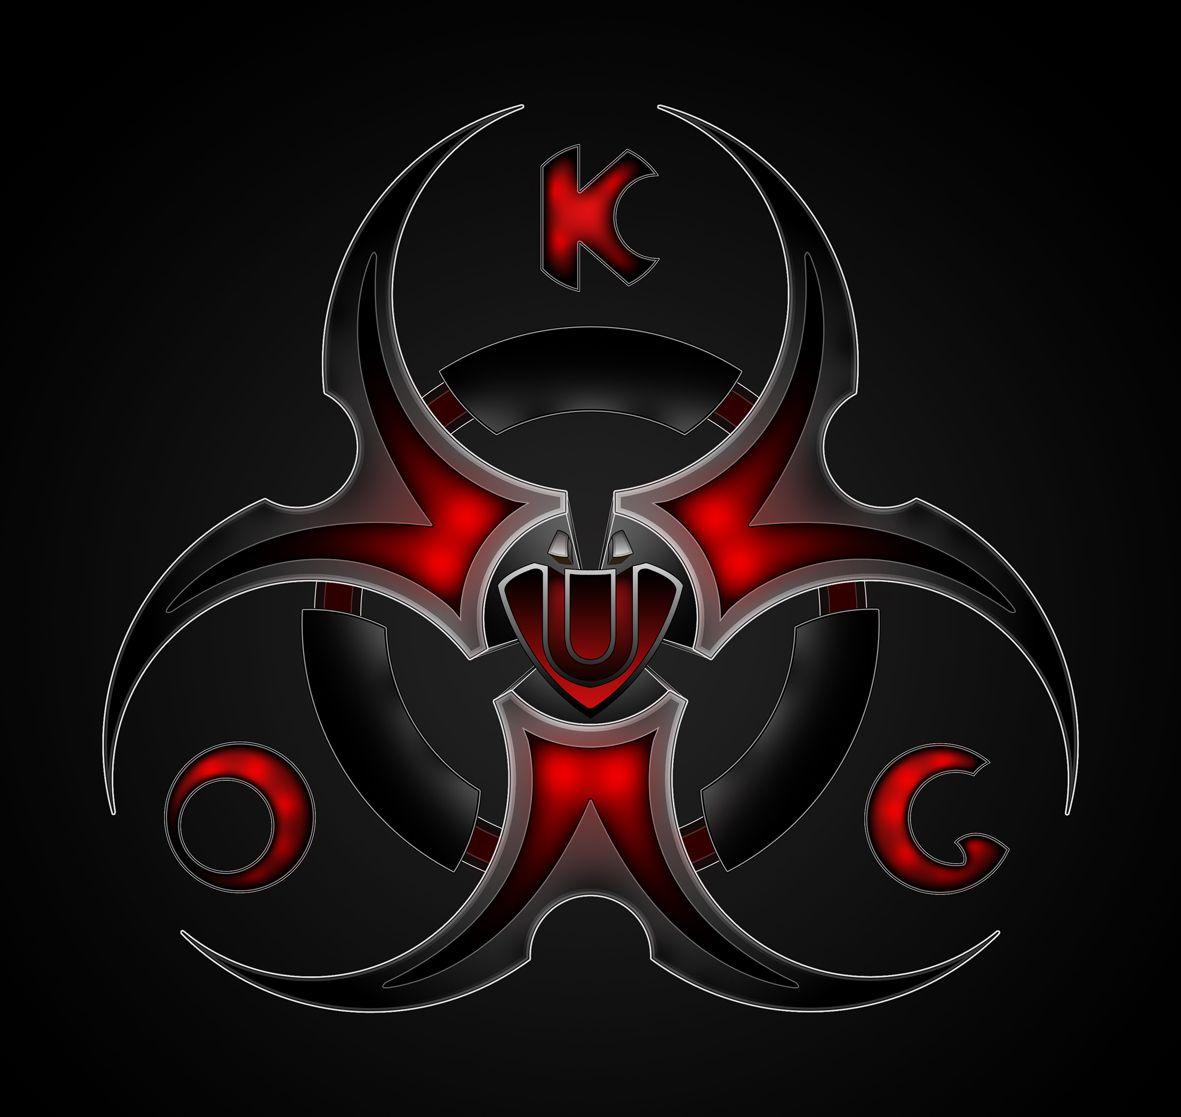 Mmxiv Logo - K.O.G. logo © Created by hobgobgraphics.com MMXIV | Our Logos ...